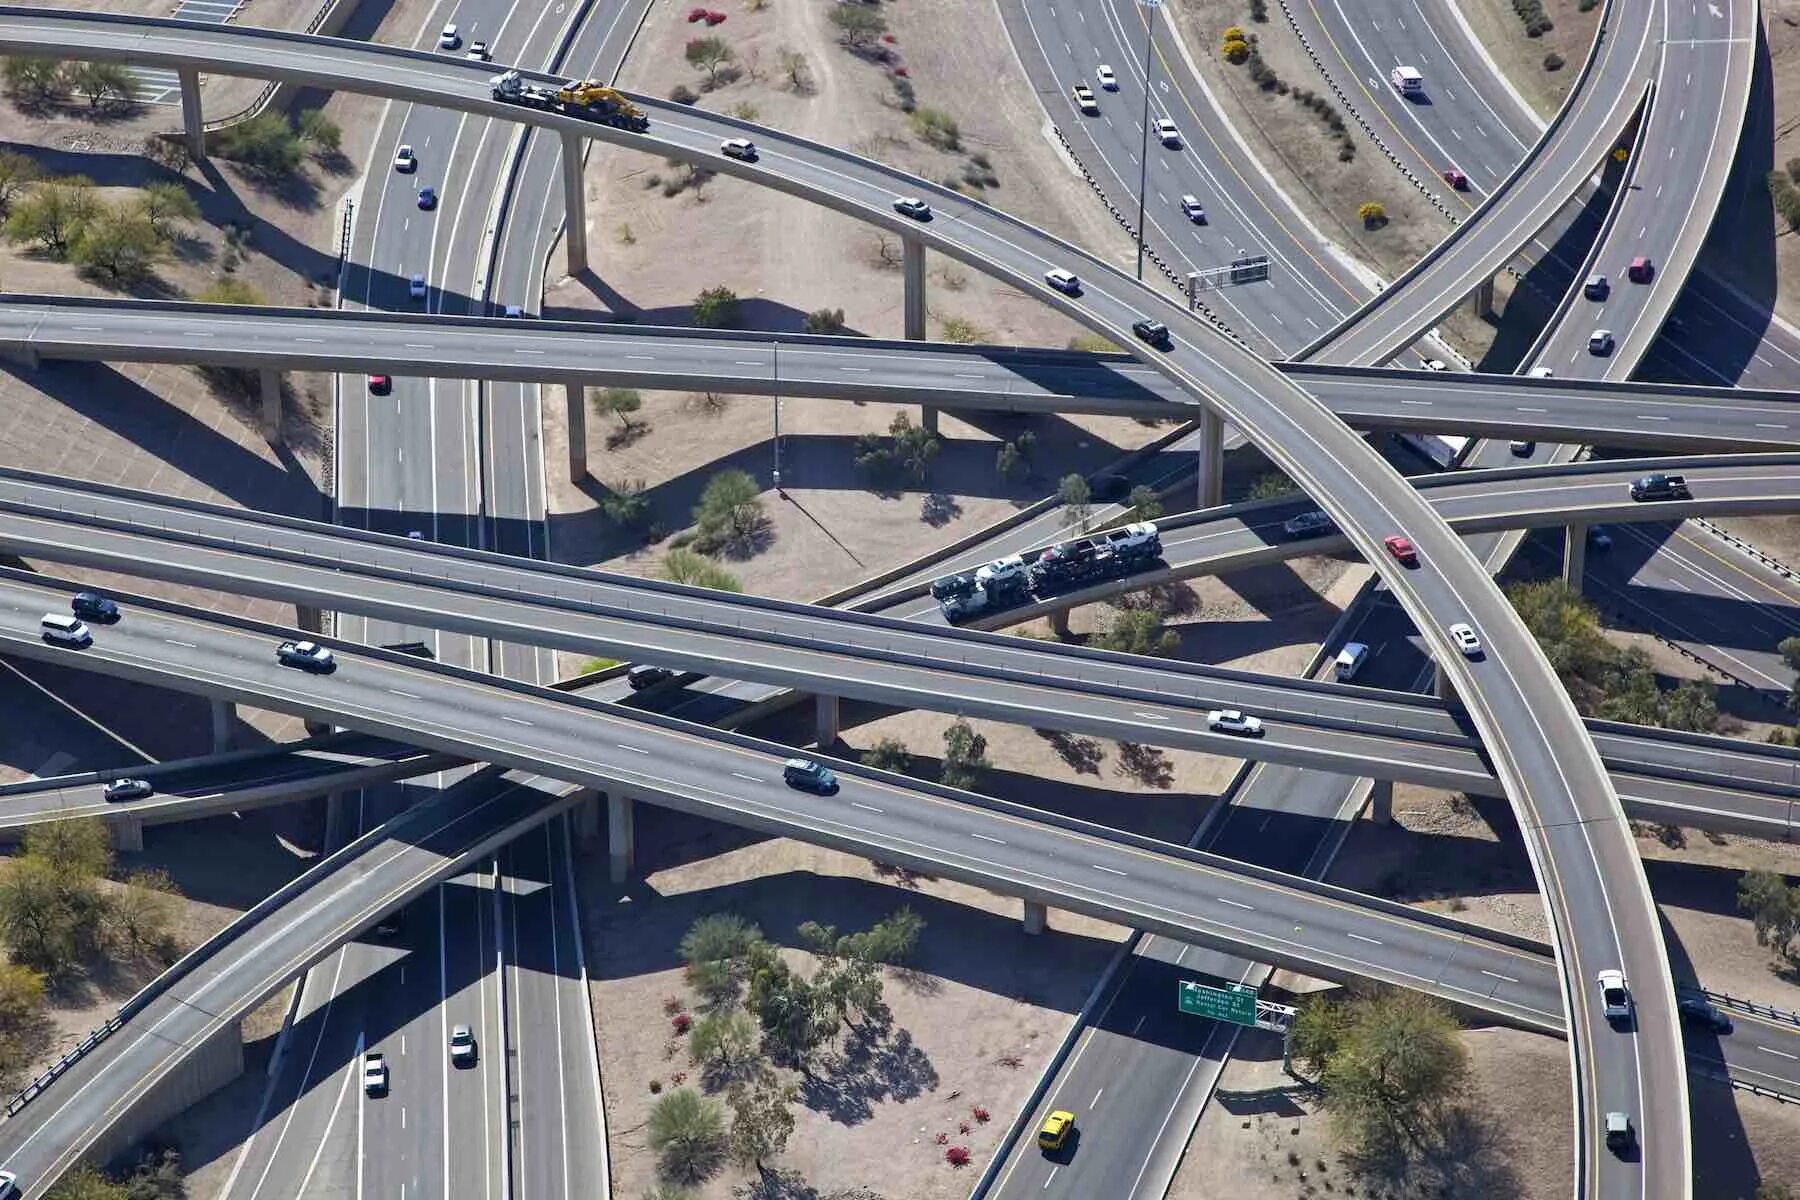 Система межштатных автомагистралей США. Скоростные автомагистрали между Штатами США. Лос Анджелес автомагистраль. Хайвей скоростная трасса США. Дорога шоссейного типа как называется